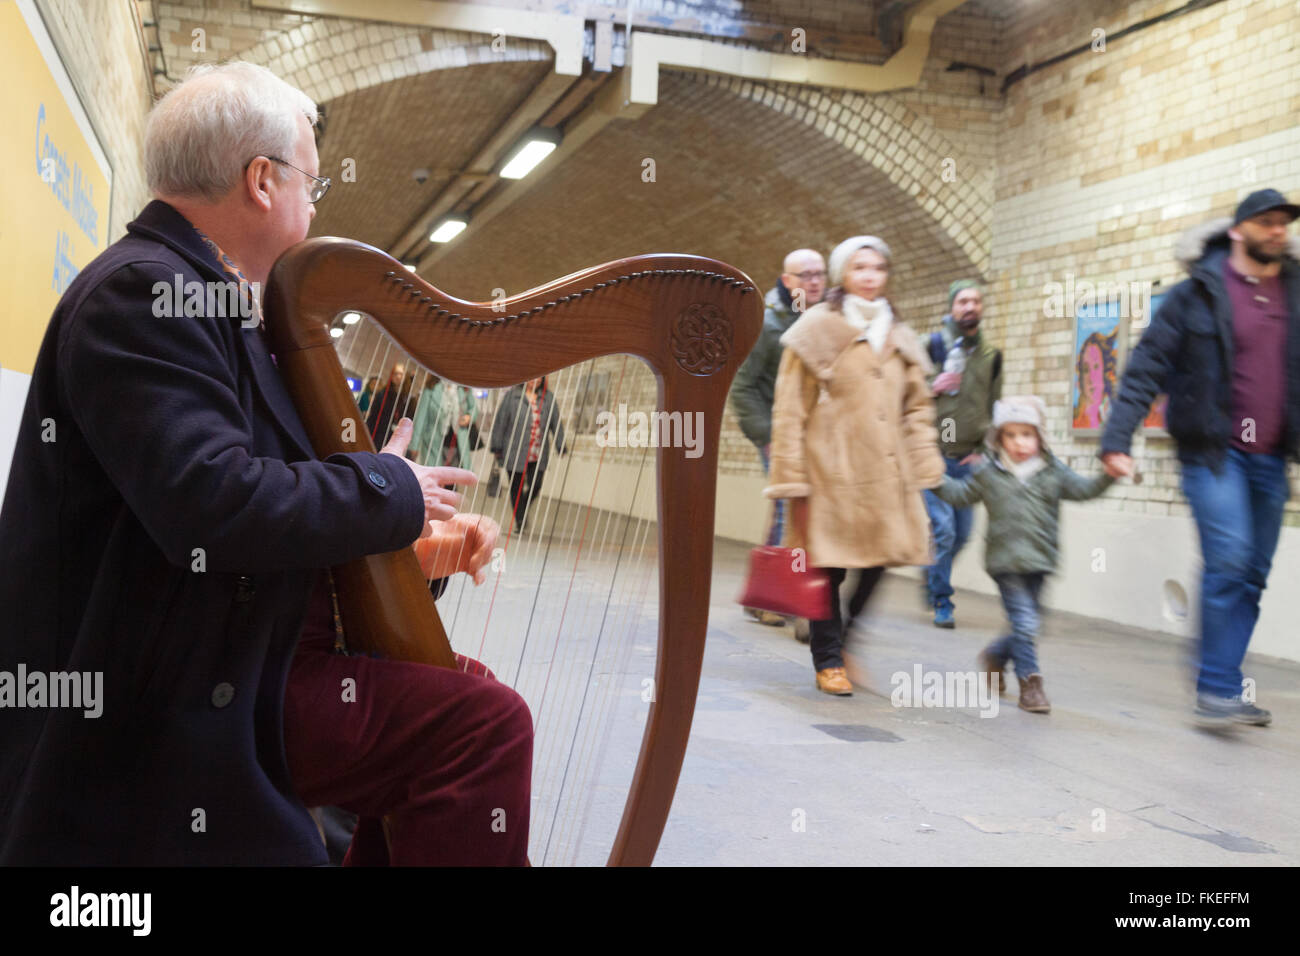 Musicien ambulant jouant de la harpe sur le métro de Londres, South Kensington, London UK Banque D'Images